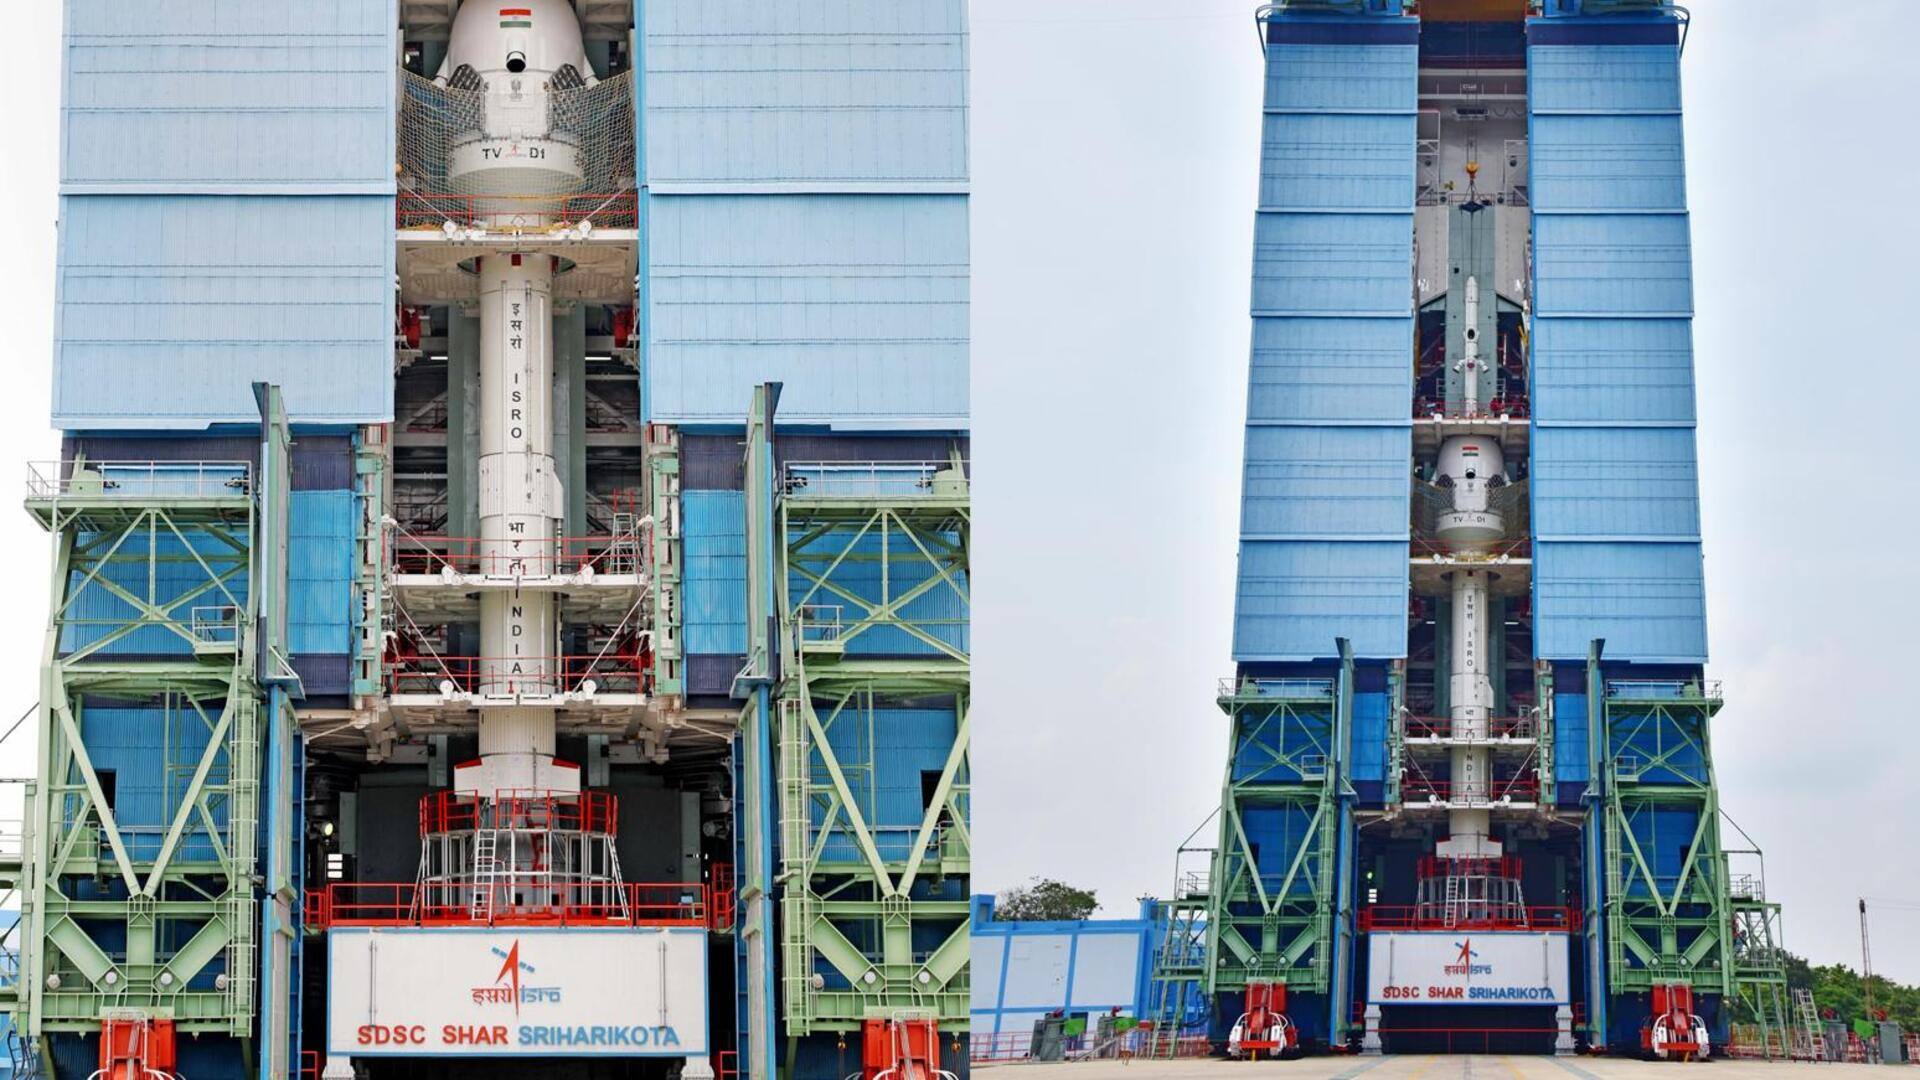 गगनयान मिशन के क्रू एस्केप सिस्टम टेस्ट को देख सकेगी जनता, ISRO ने शुरू किया रजिस्ट्रेशन